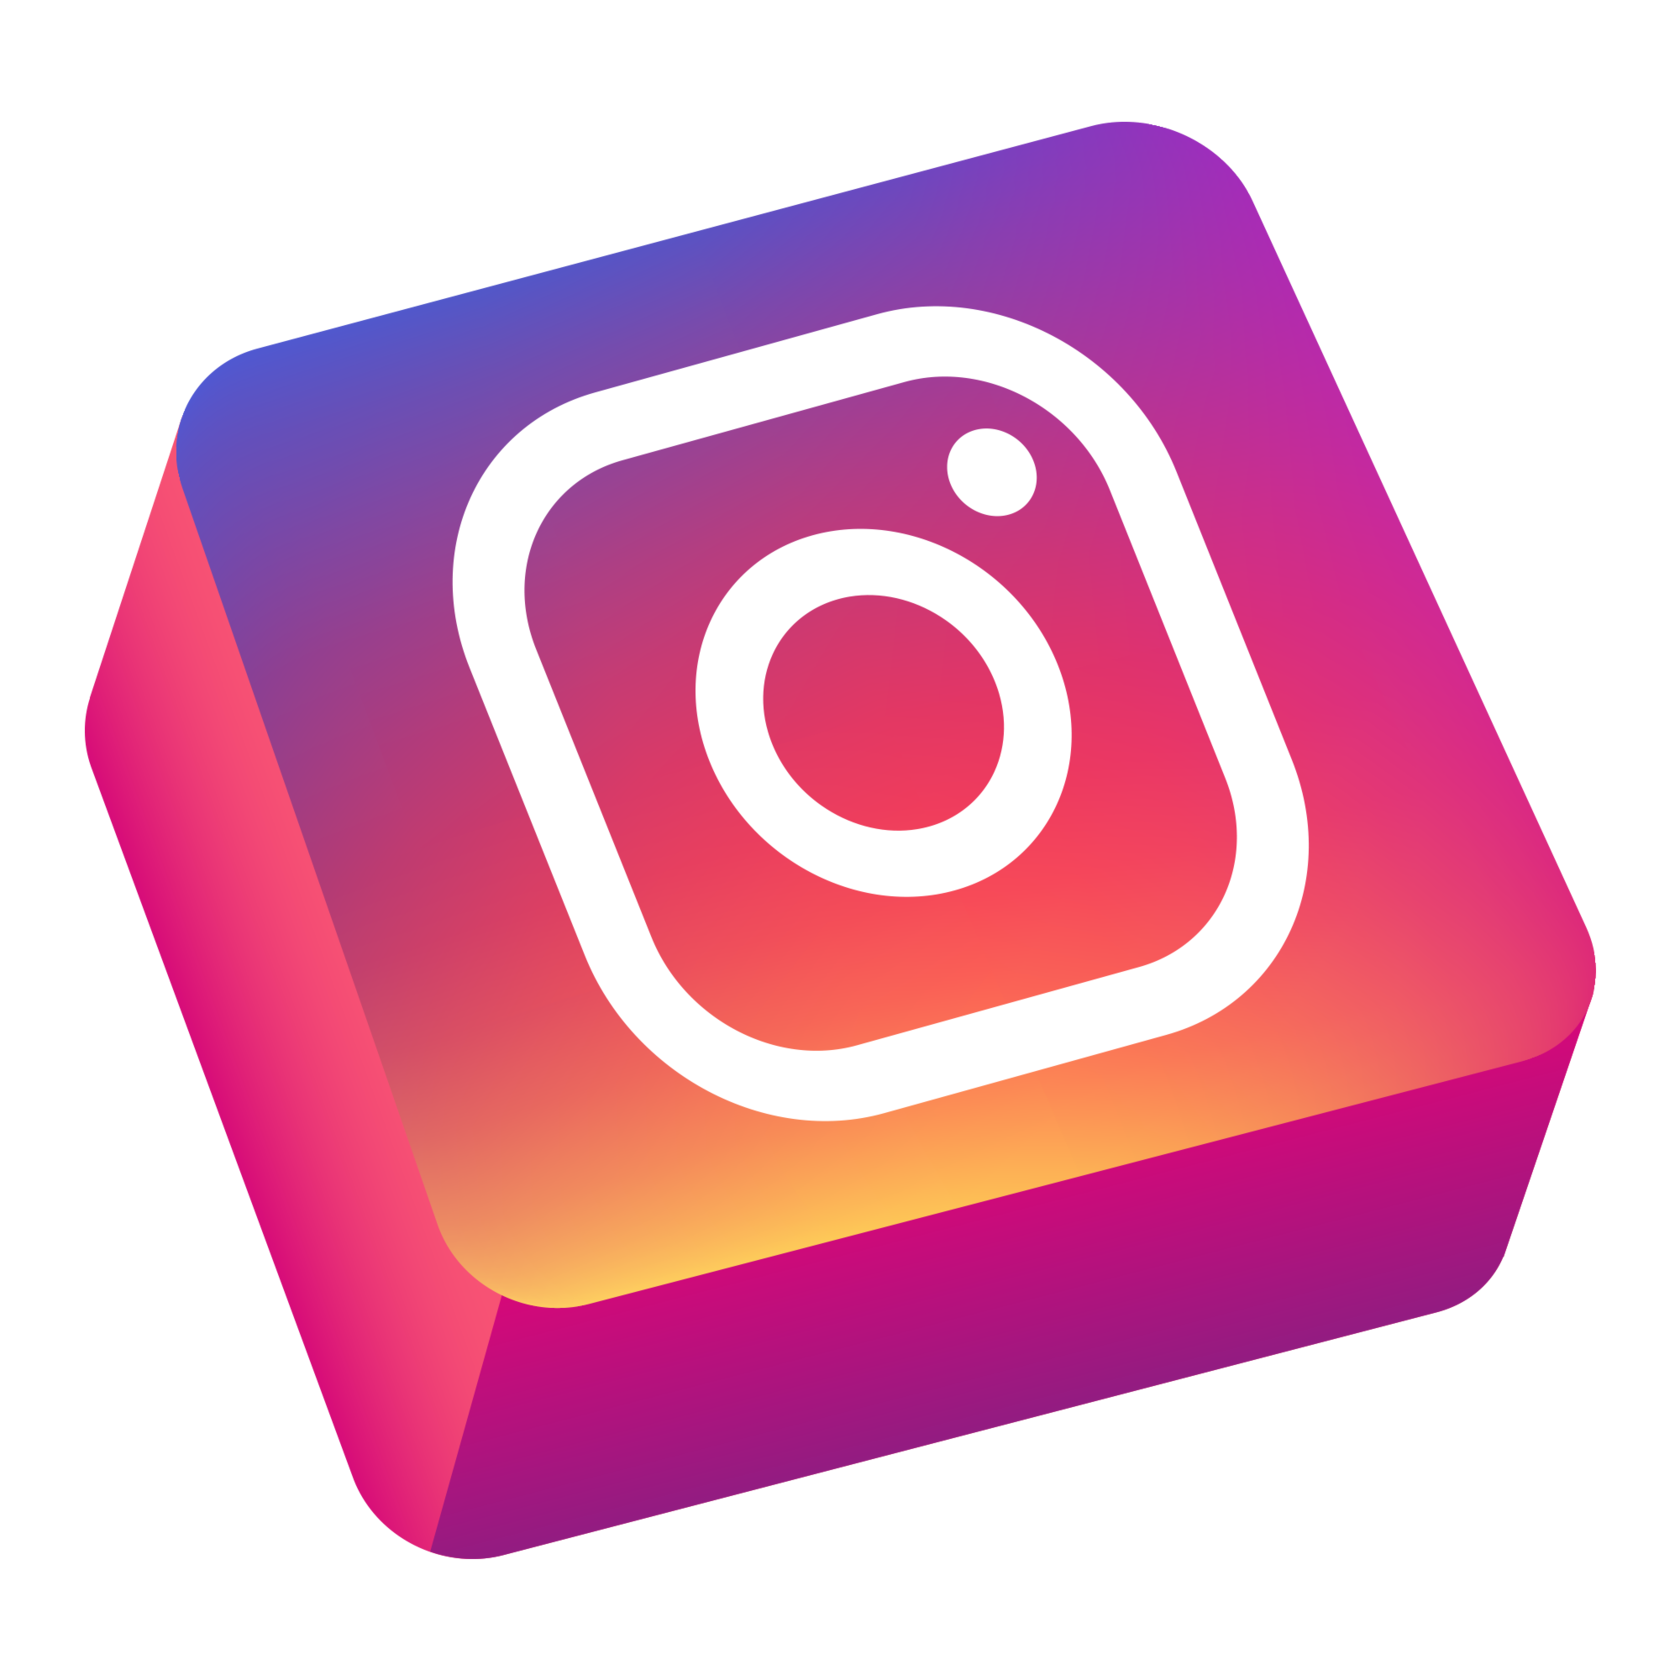 3д логотип Инстаграмм. Иконка Instagram. Иконка Инстаграм 3д. Объемные иконки. Xokalap insta